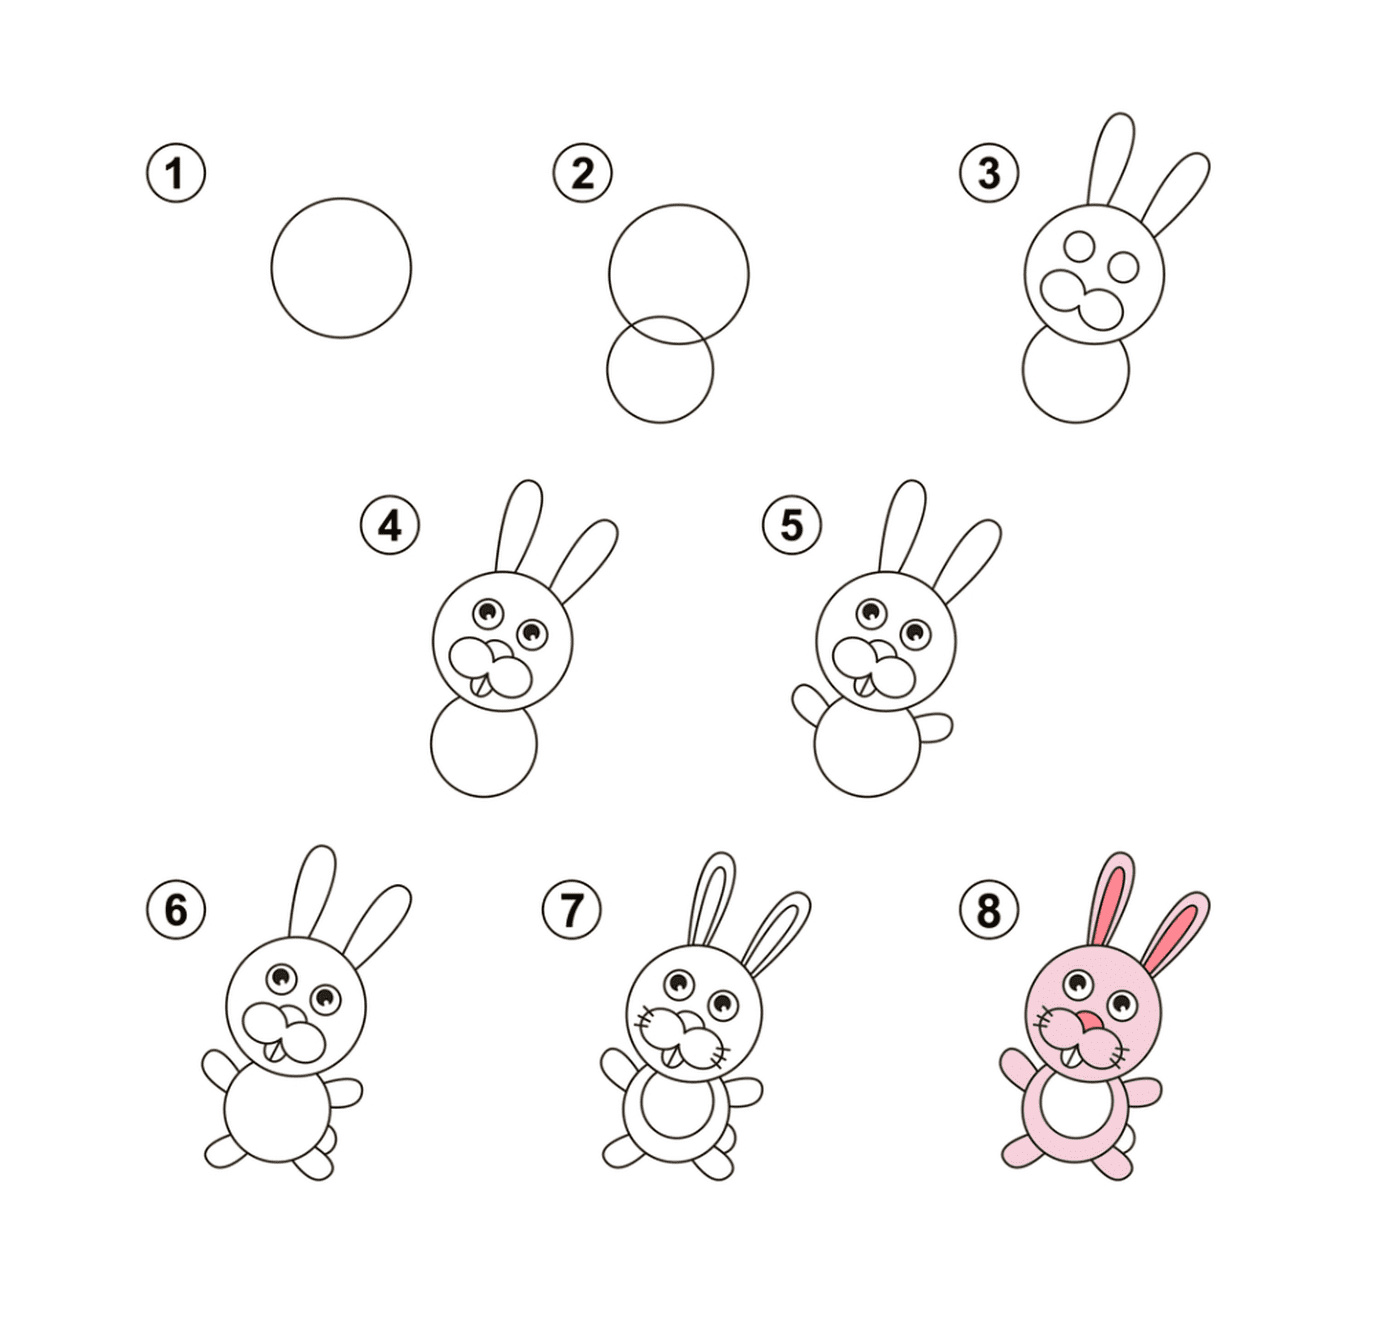  Instrucciones paso a paso sobre cómo dibujar un conejo 